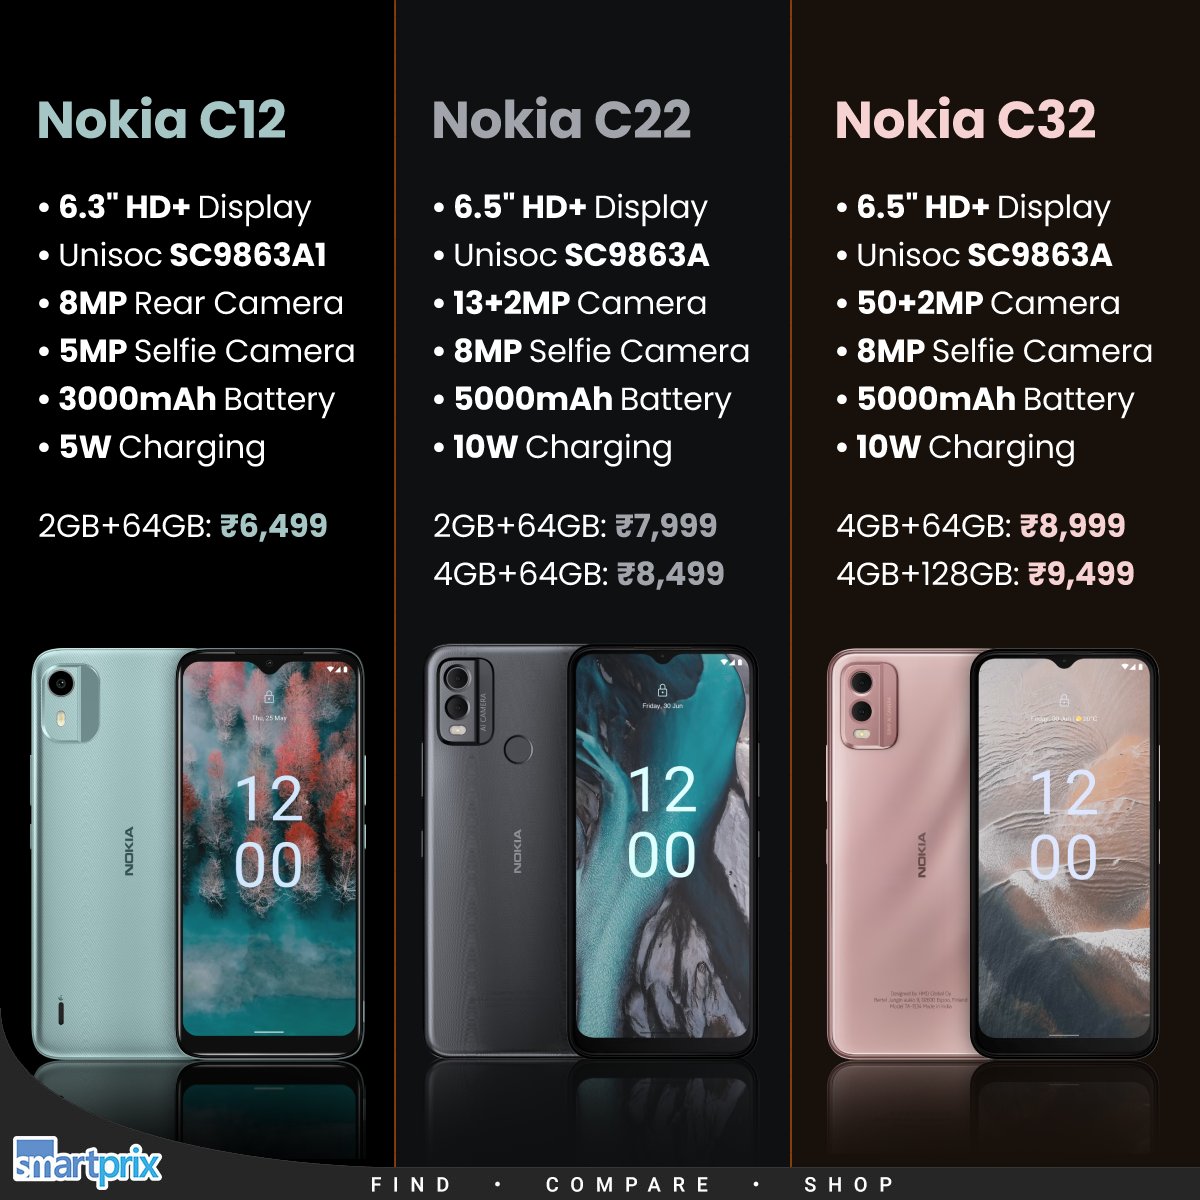 Nokia C22 2GB/64GB - Unisoc SC9863A